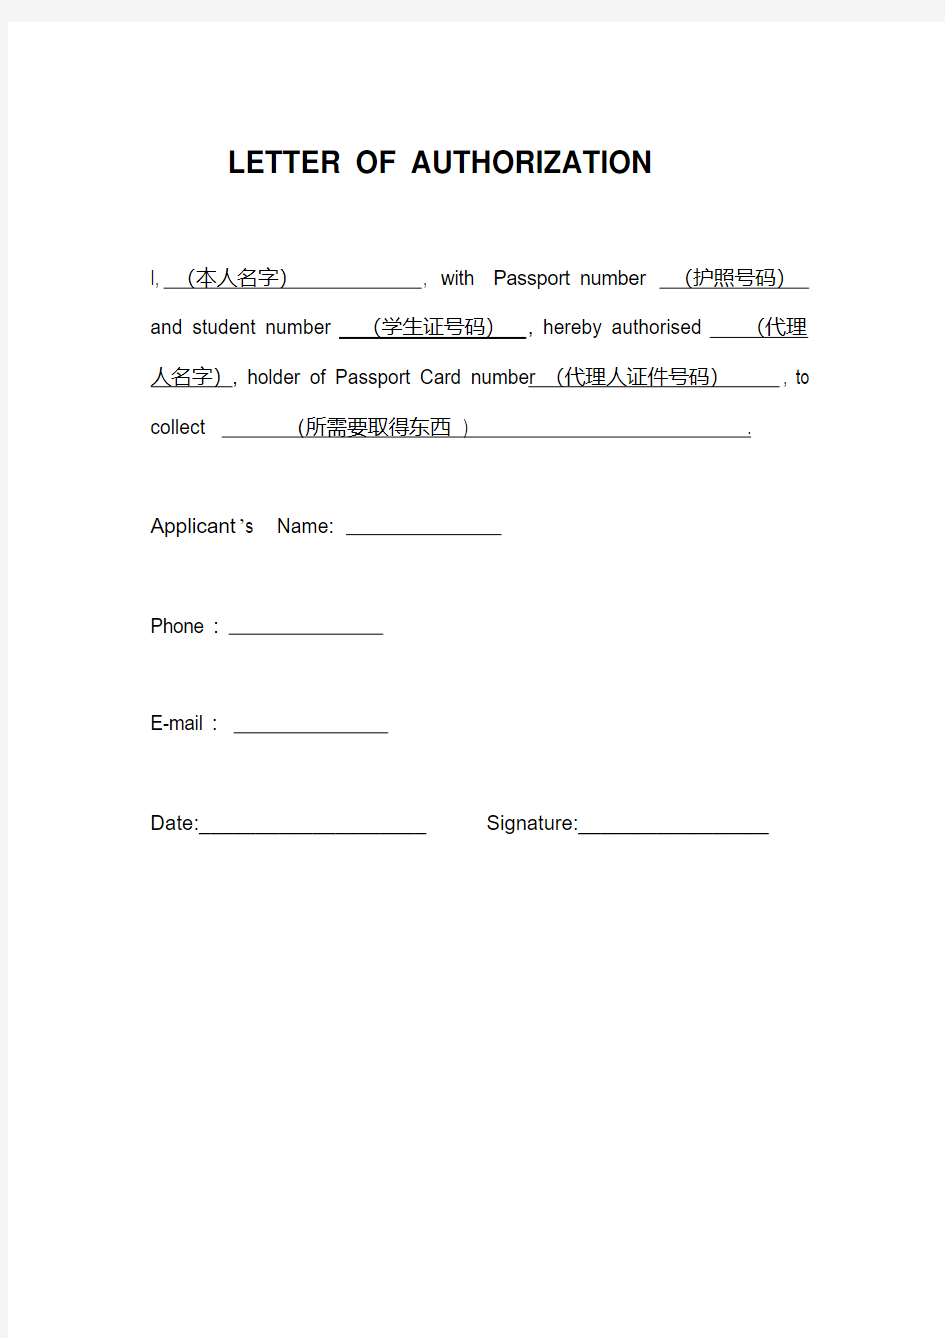 英文授权信模板-(letter-of-authorization).pdf